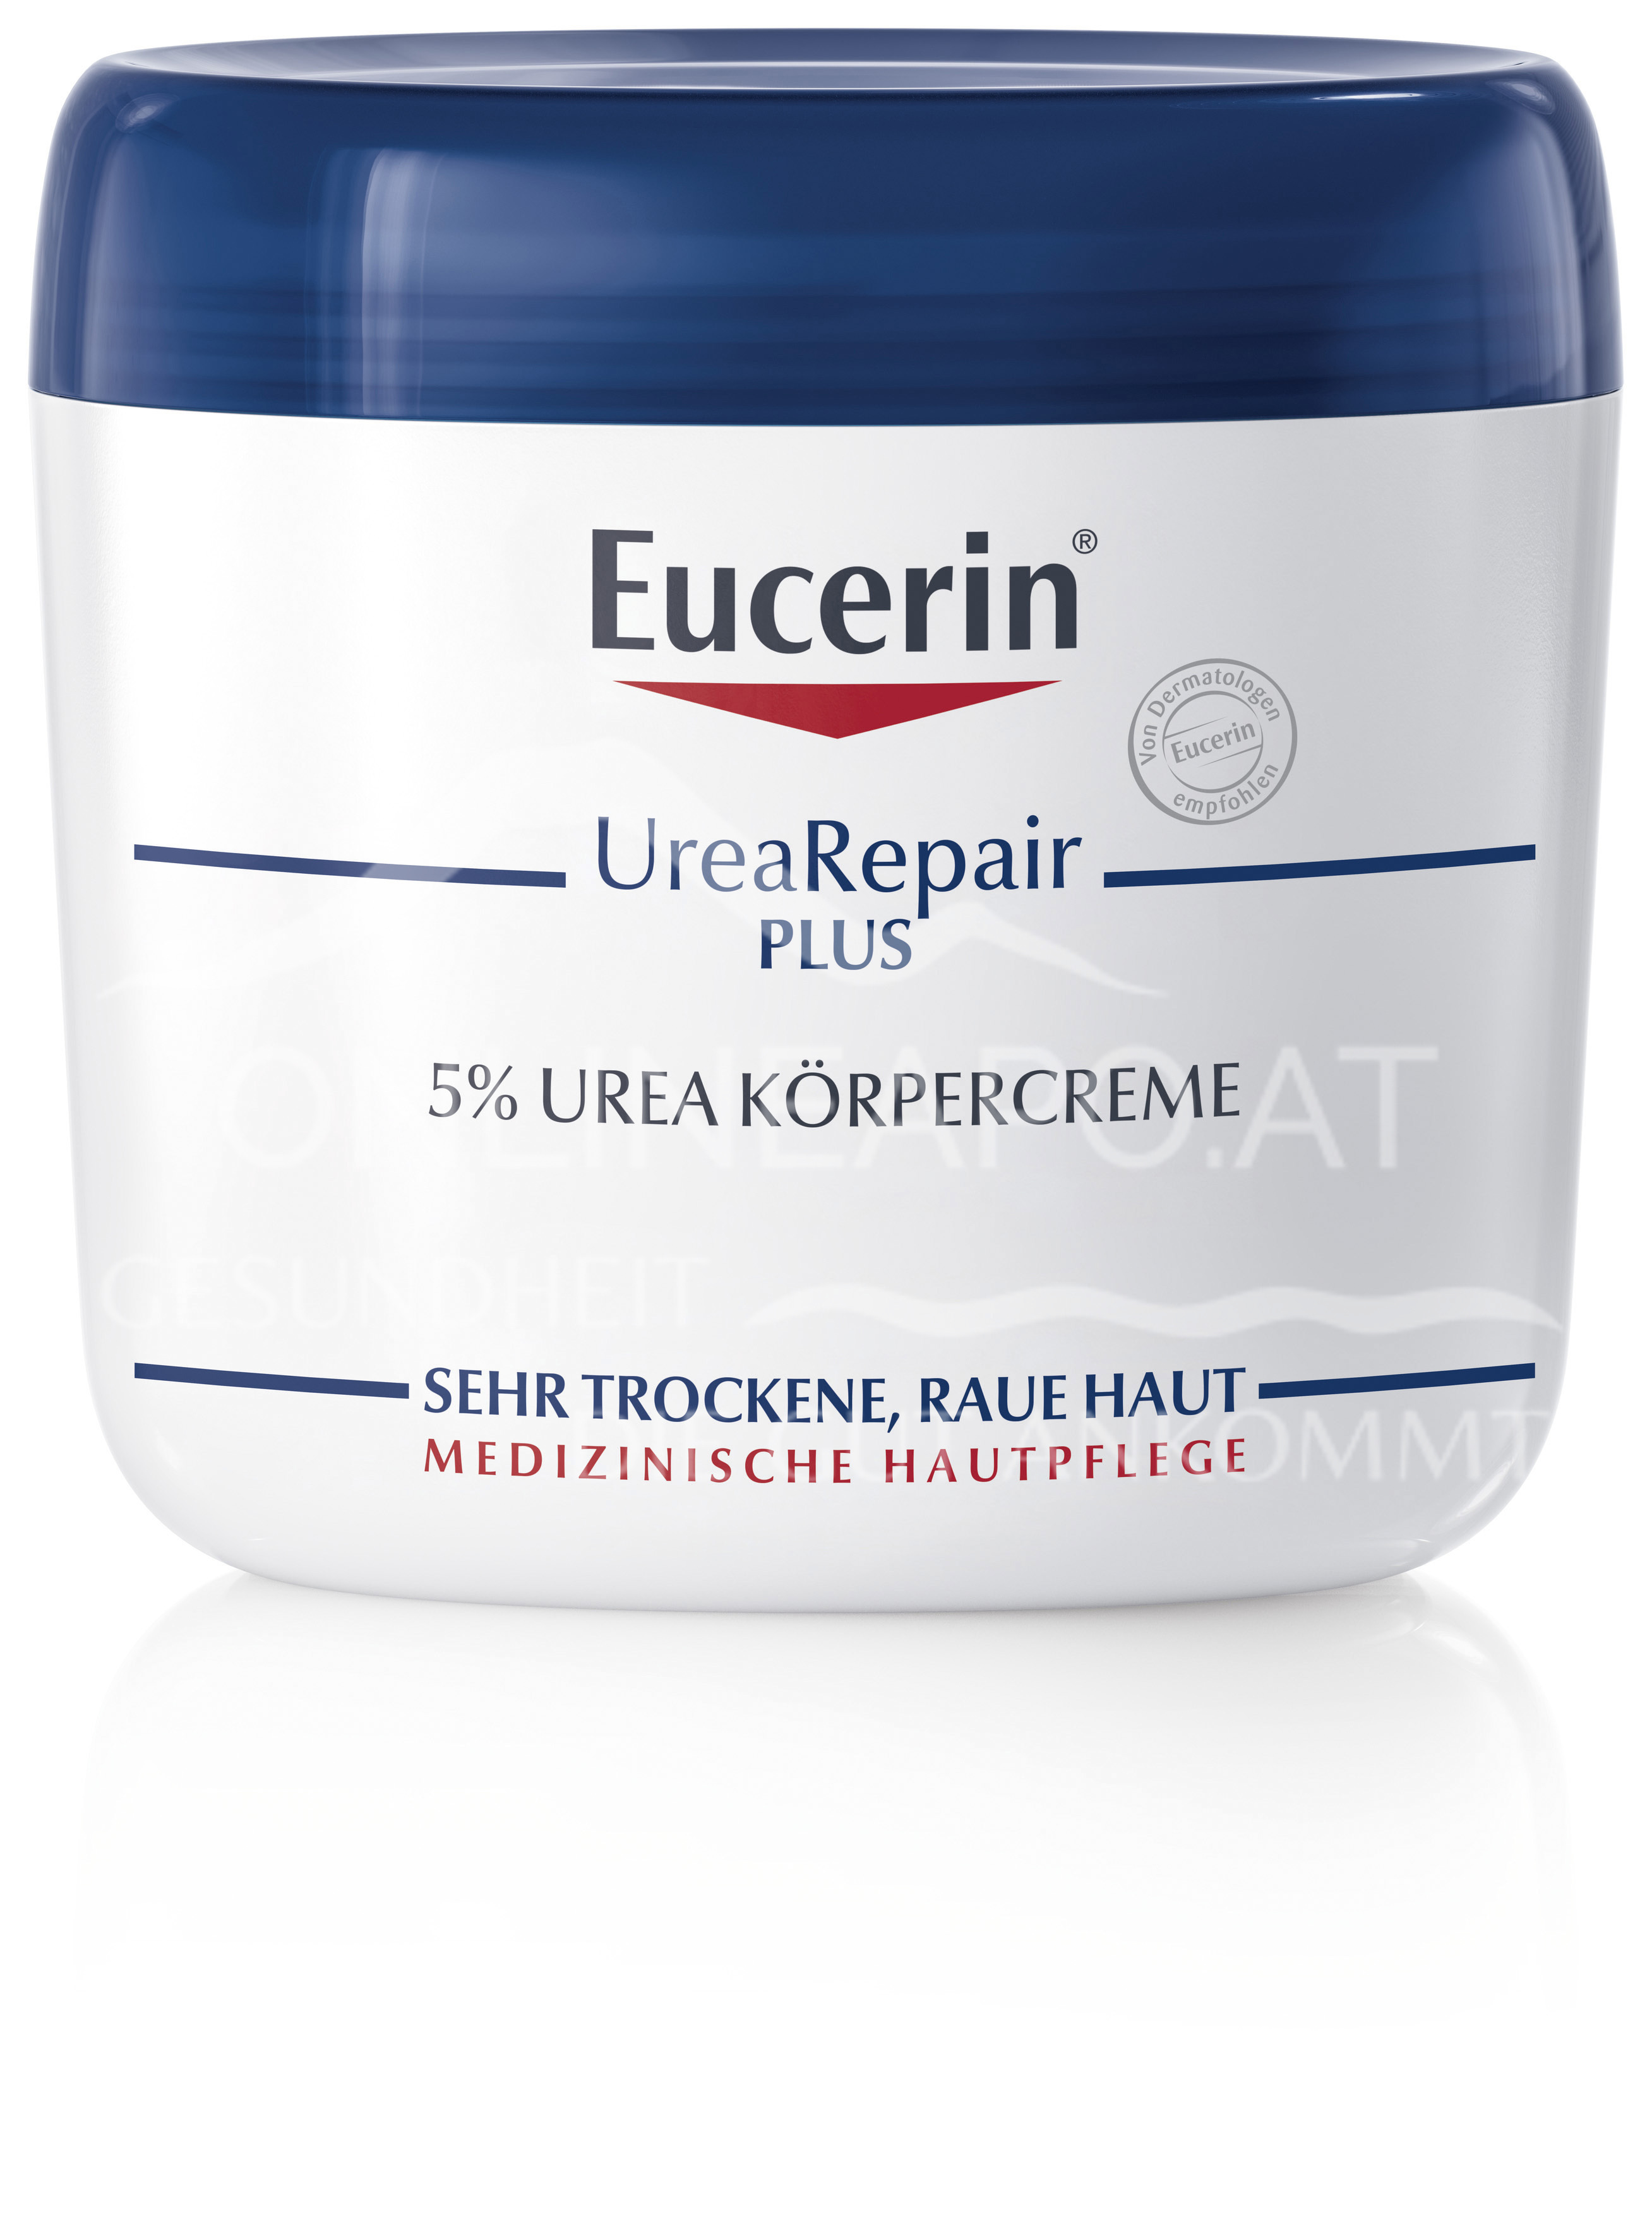 Eucerin® UreaRepair PLUS 5% Urea Körpercreme